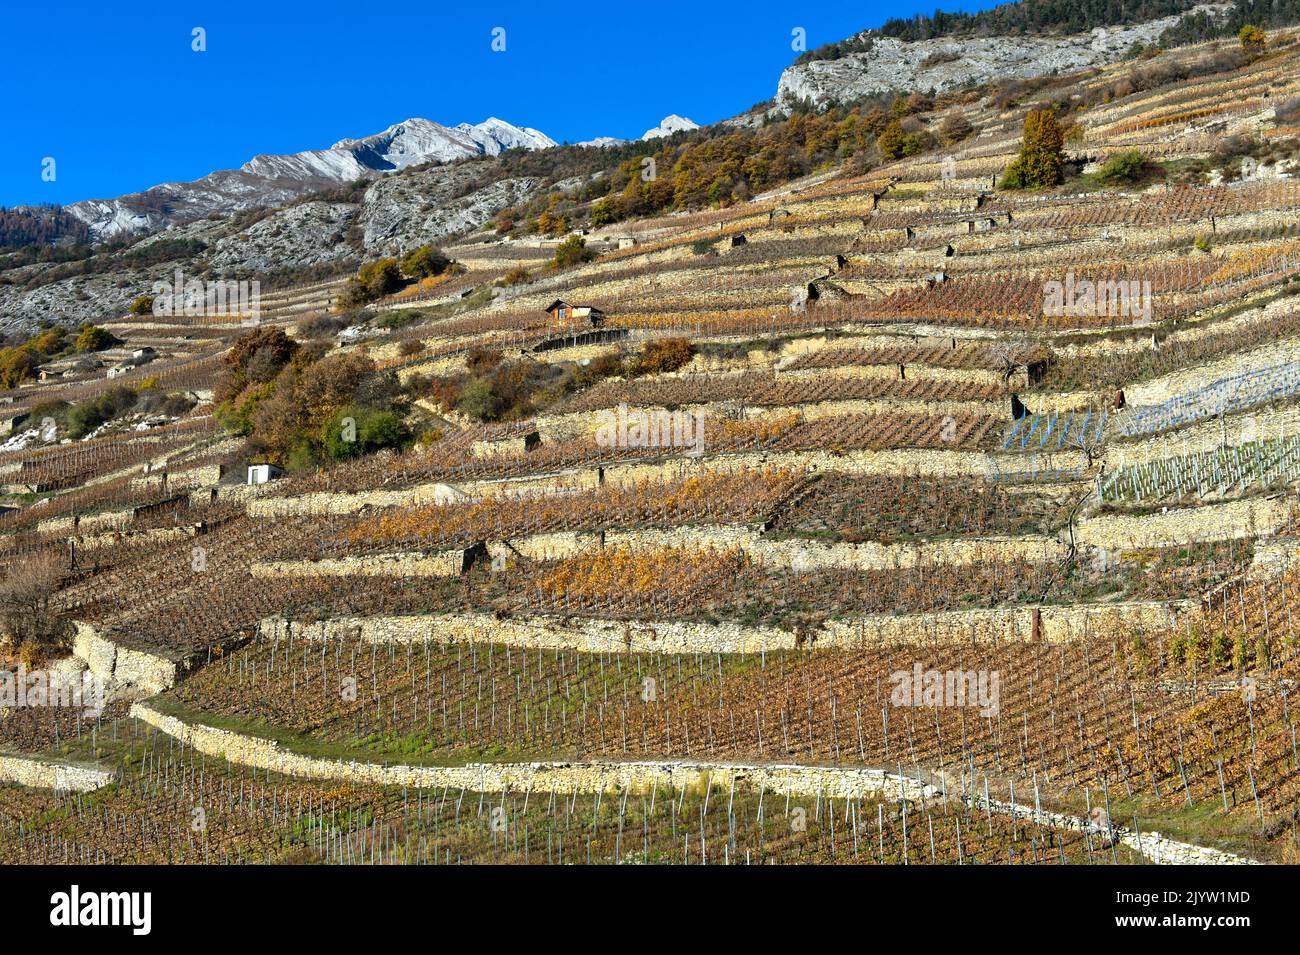 Terrasses de vignobles sur la colline ensoleillée au-dessus de la vallée du Rhône, Vétroz, Valais, Suisse Banque D'Images